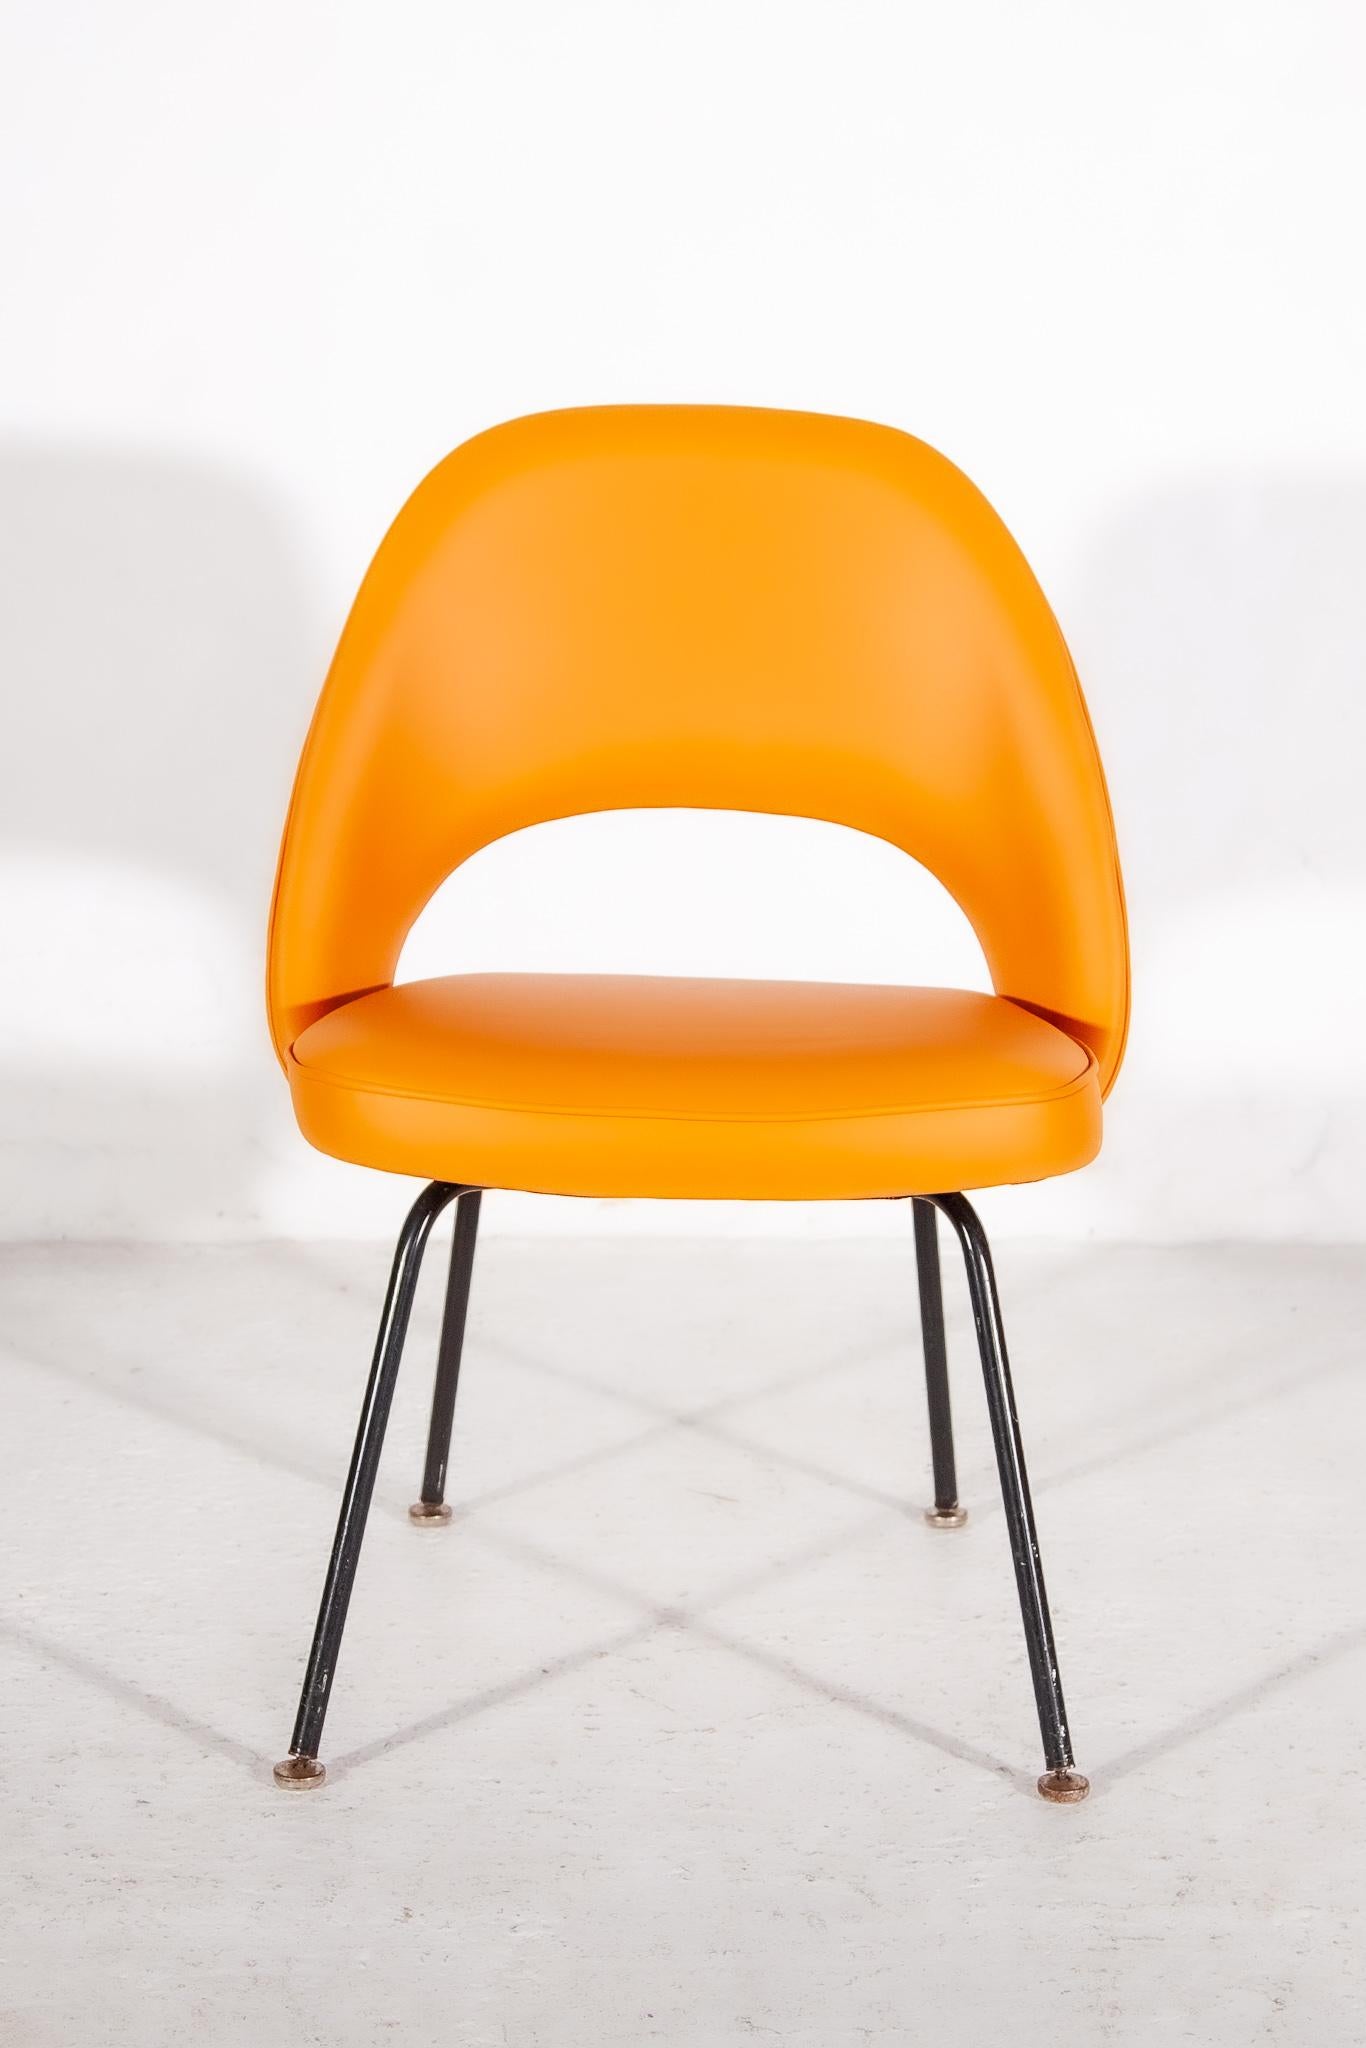 Ensemble de quatre fauteuils de direction sans accoudoir par Eero Saarinen pour Knoll International. Les chaises portent une étiquette sur le côté inférieur KNOLL International.

Découvrez l'une des clés de voûte du design mobilier moderne avec le